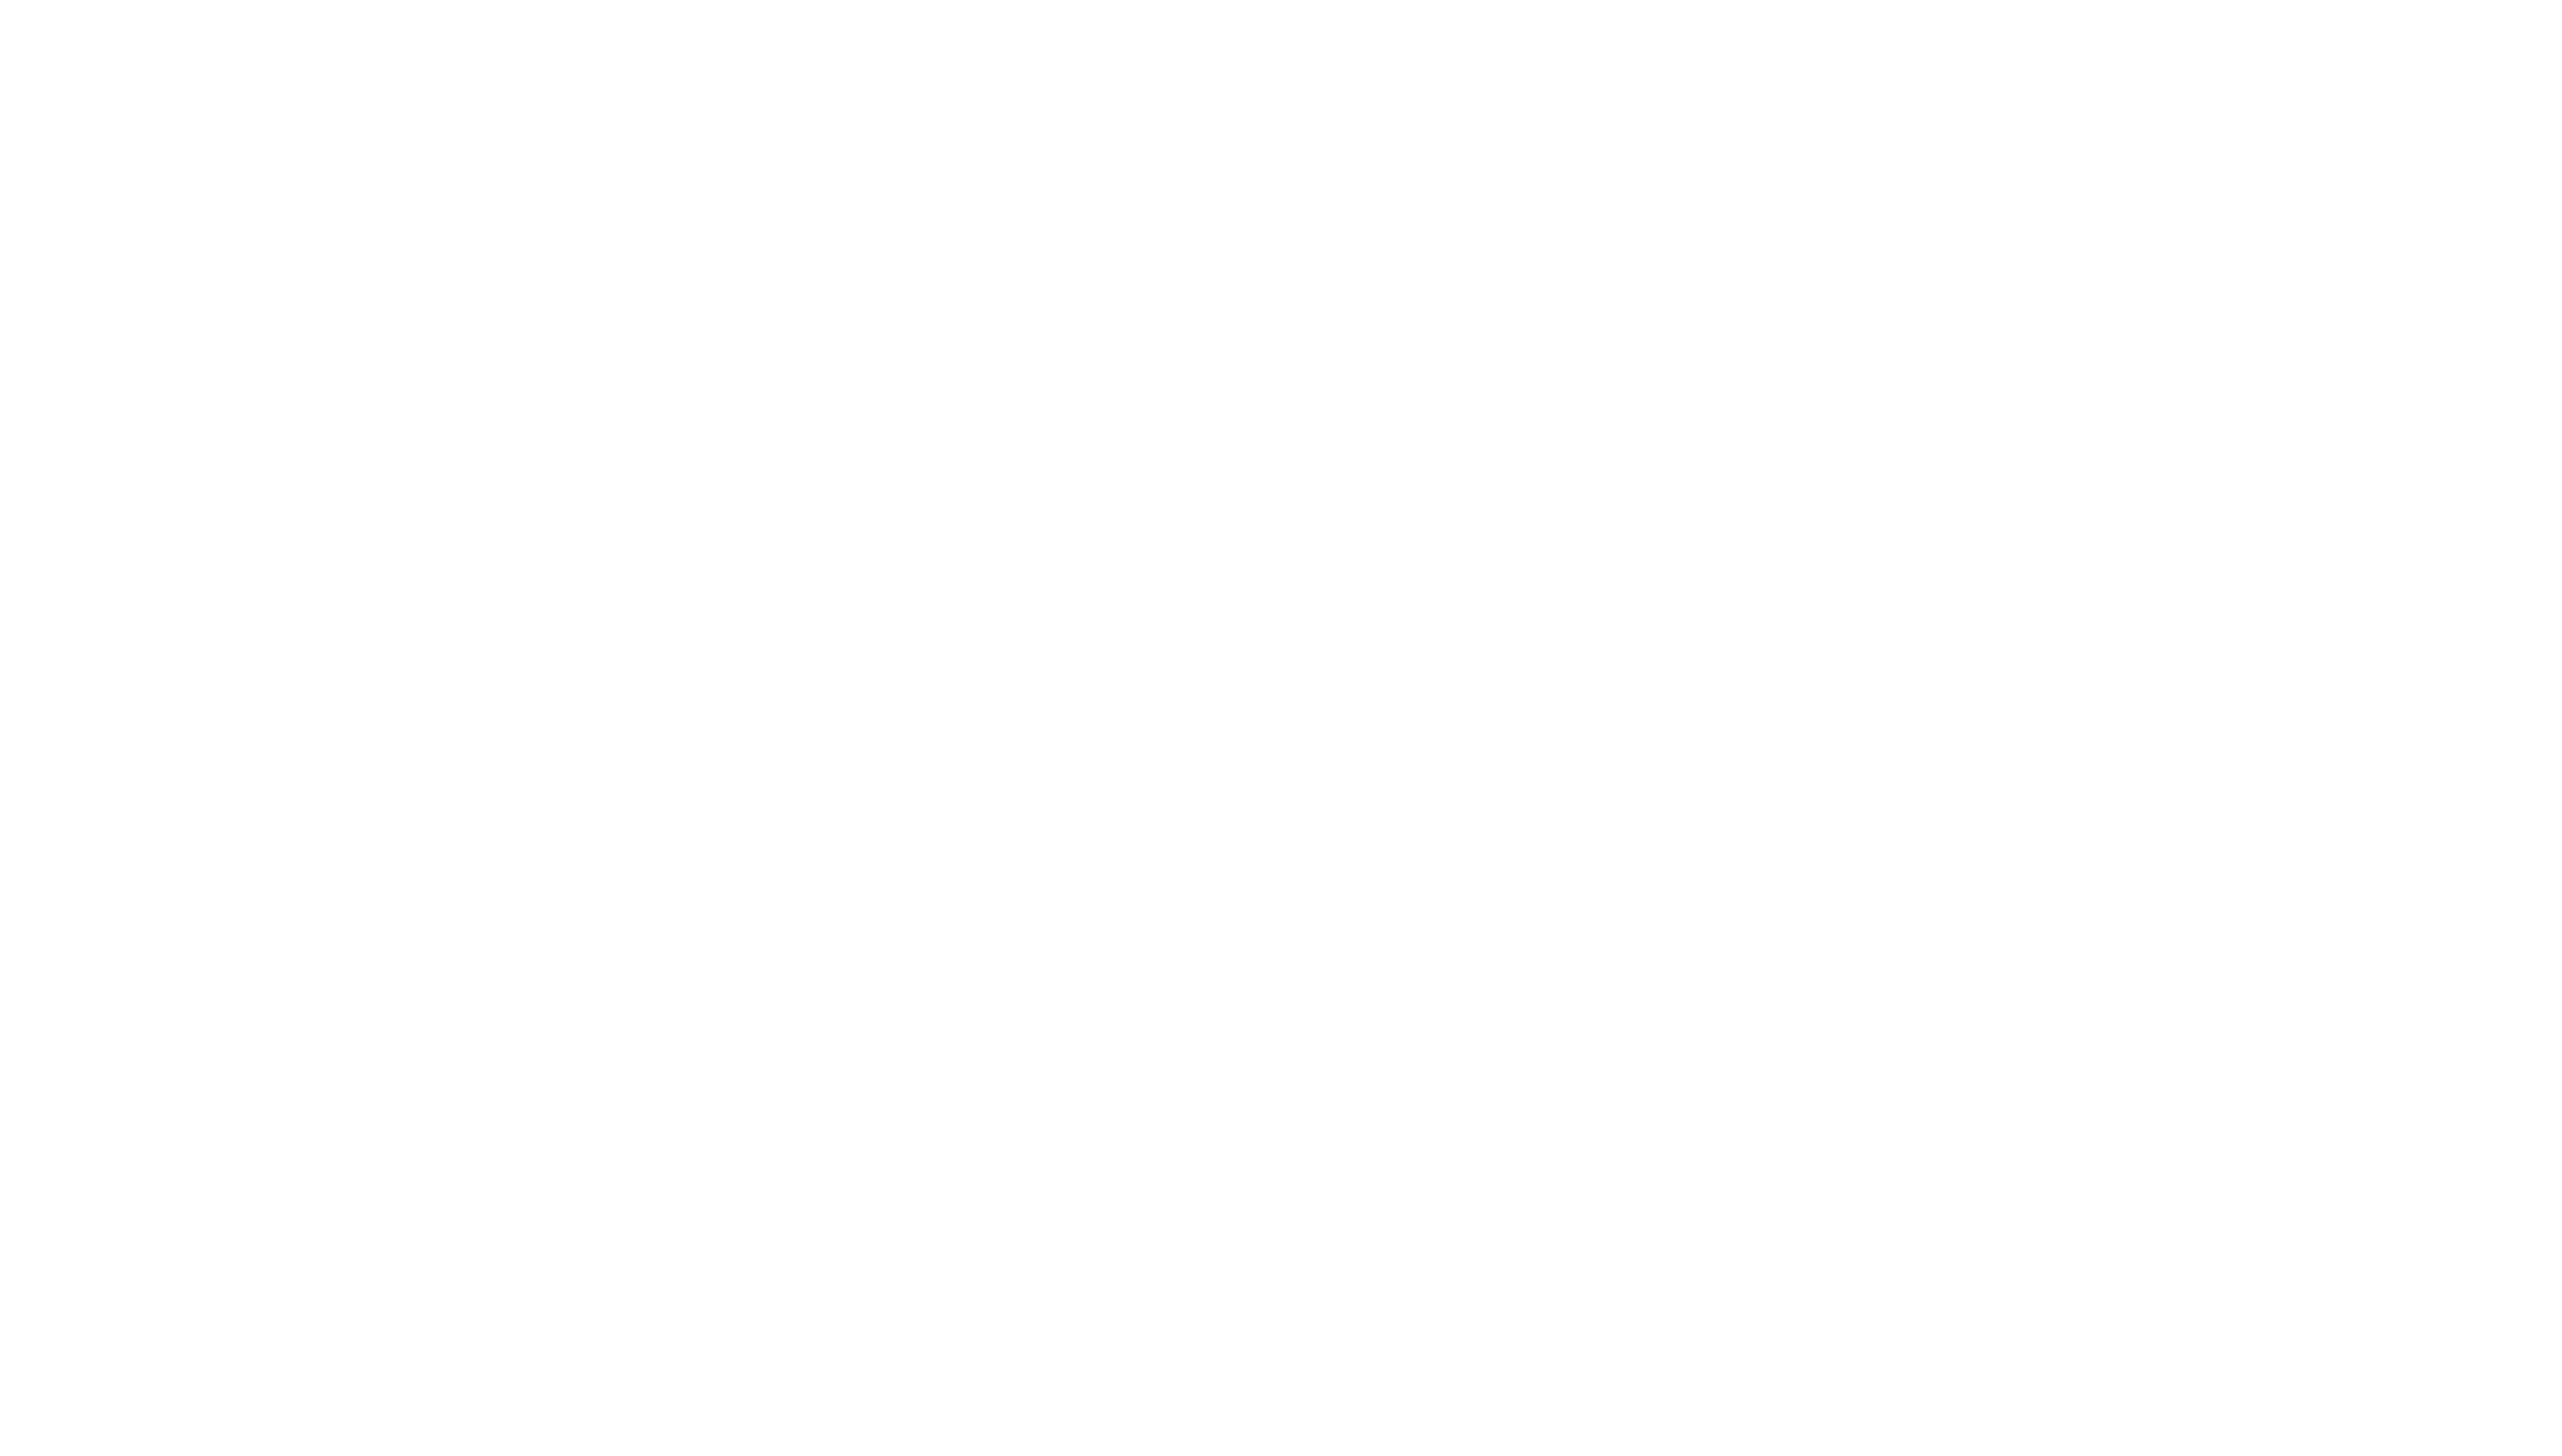 ag-insurance